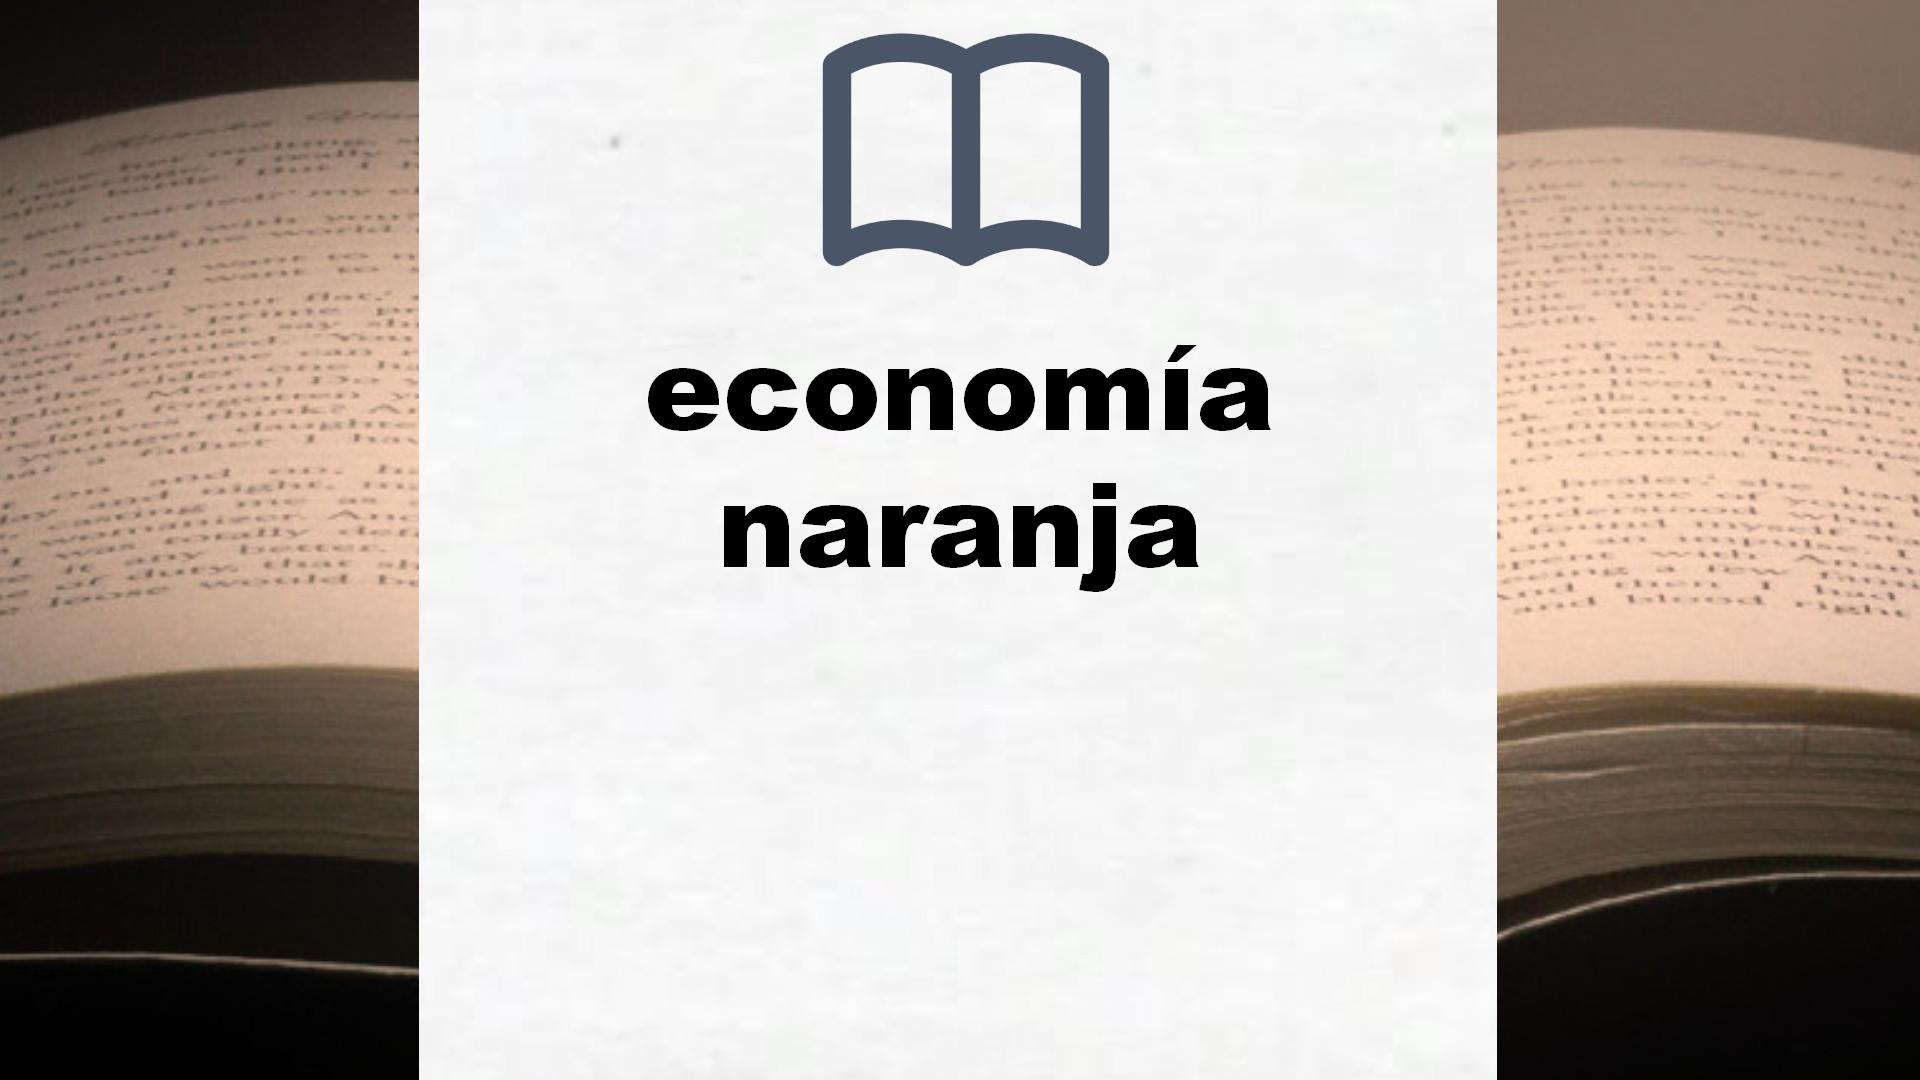 Libros sobre economía naranja